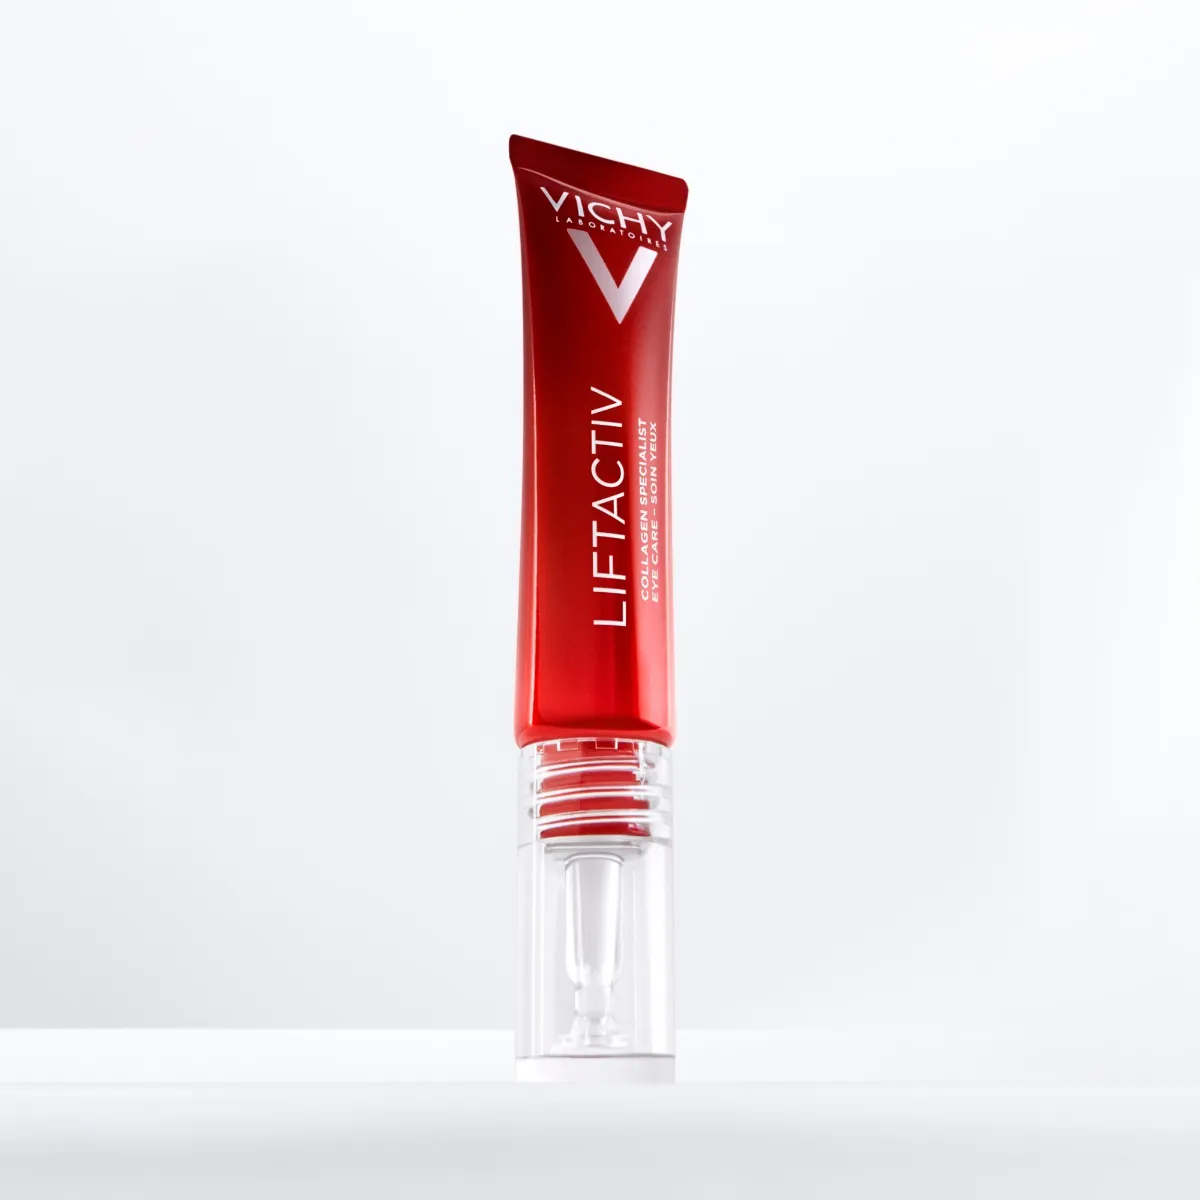 Vichy Liftactiv Collagen Specialist oční péče 15 ml